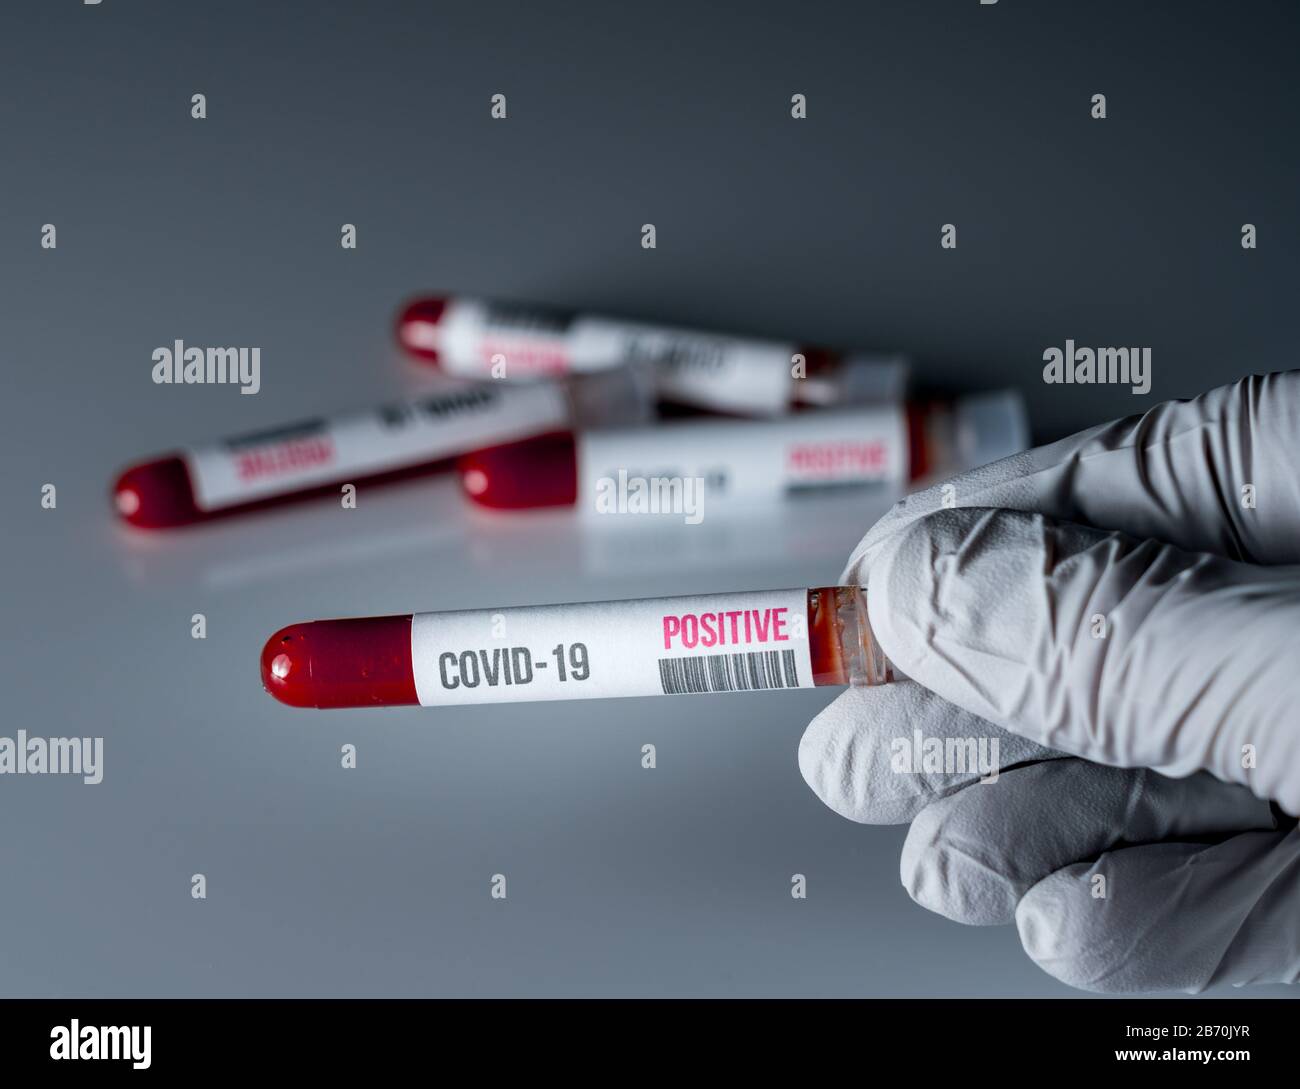 Gant médical contenant un tube de sang avec un résultat positif pour le test de Covid-19 ou de coronavirus Banque D'Images